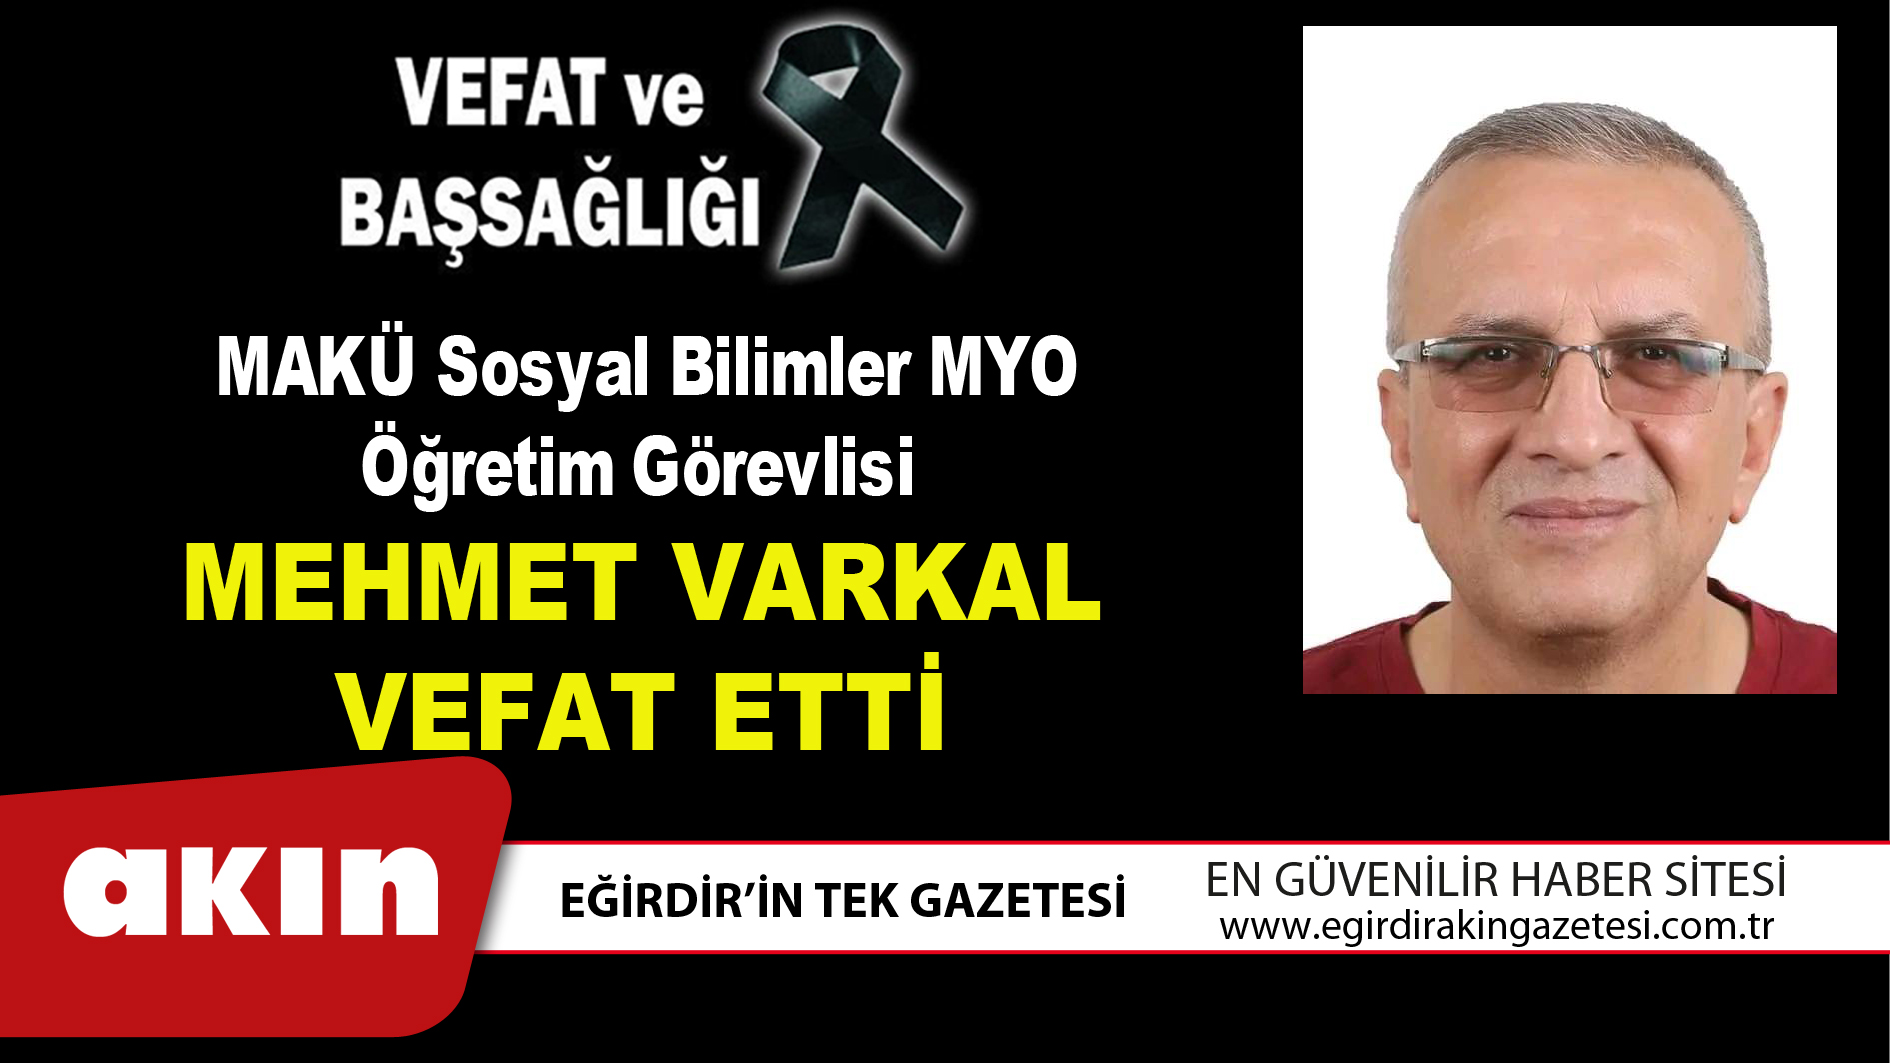 MAKÜ Sosyal Bilimler MYO Öğretim Görevlisi Mehmet Varkal vefat etti